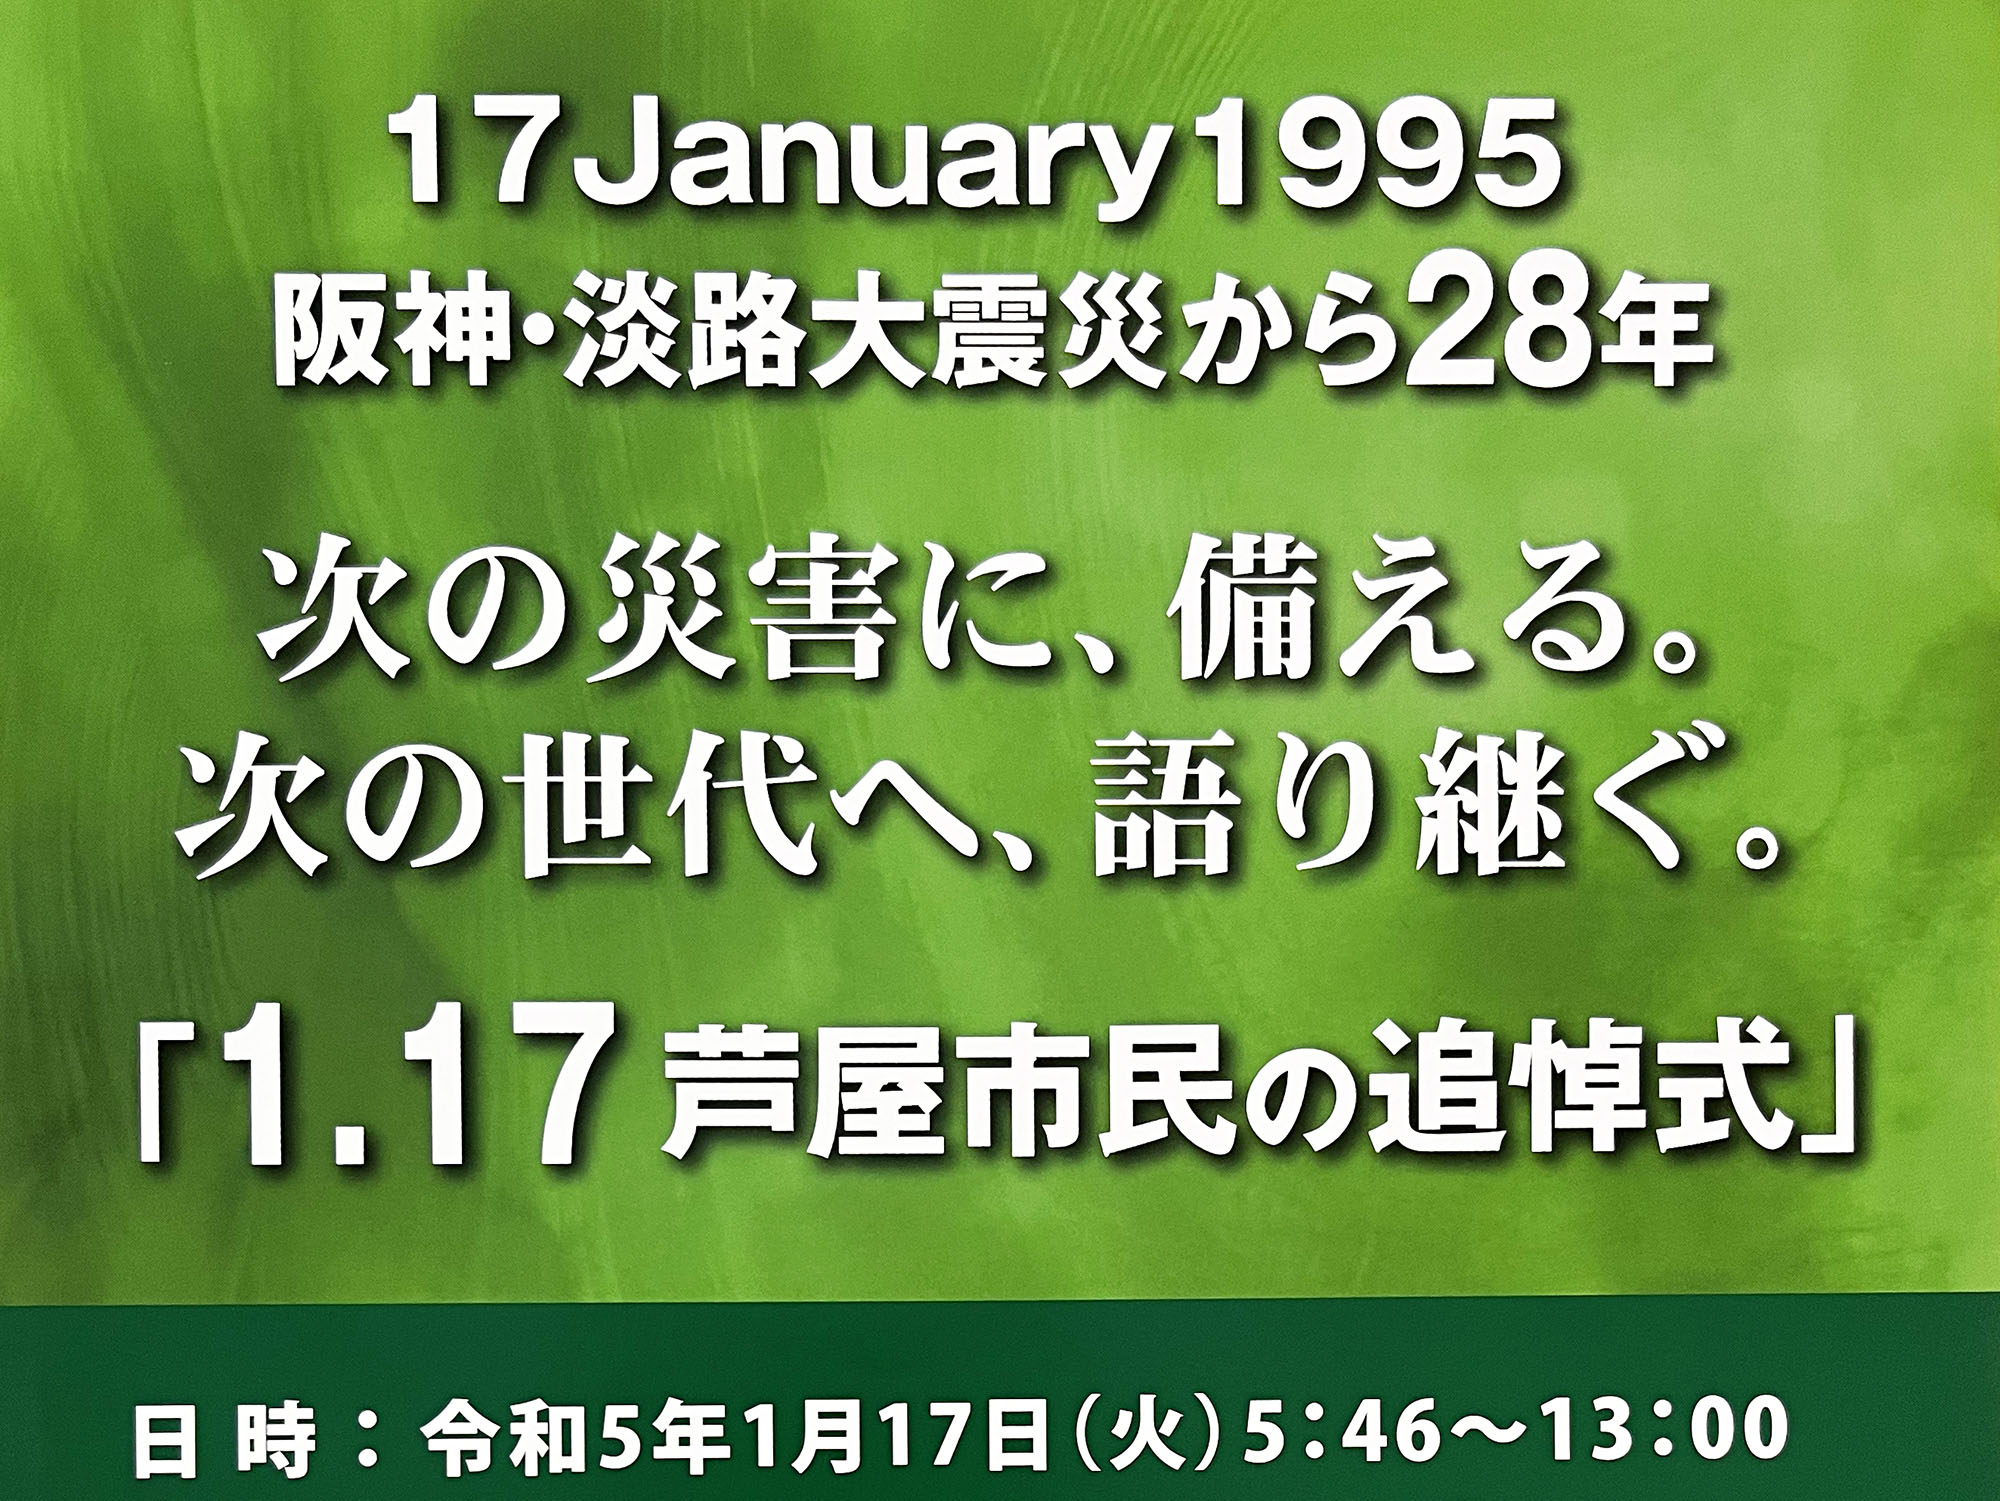 2023年1月17日 阪神・淡路大震災「1.17芦屋市民の追悼式」